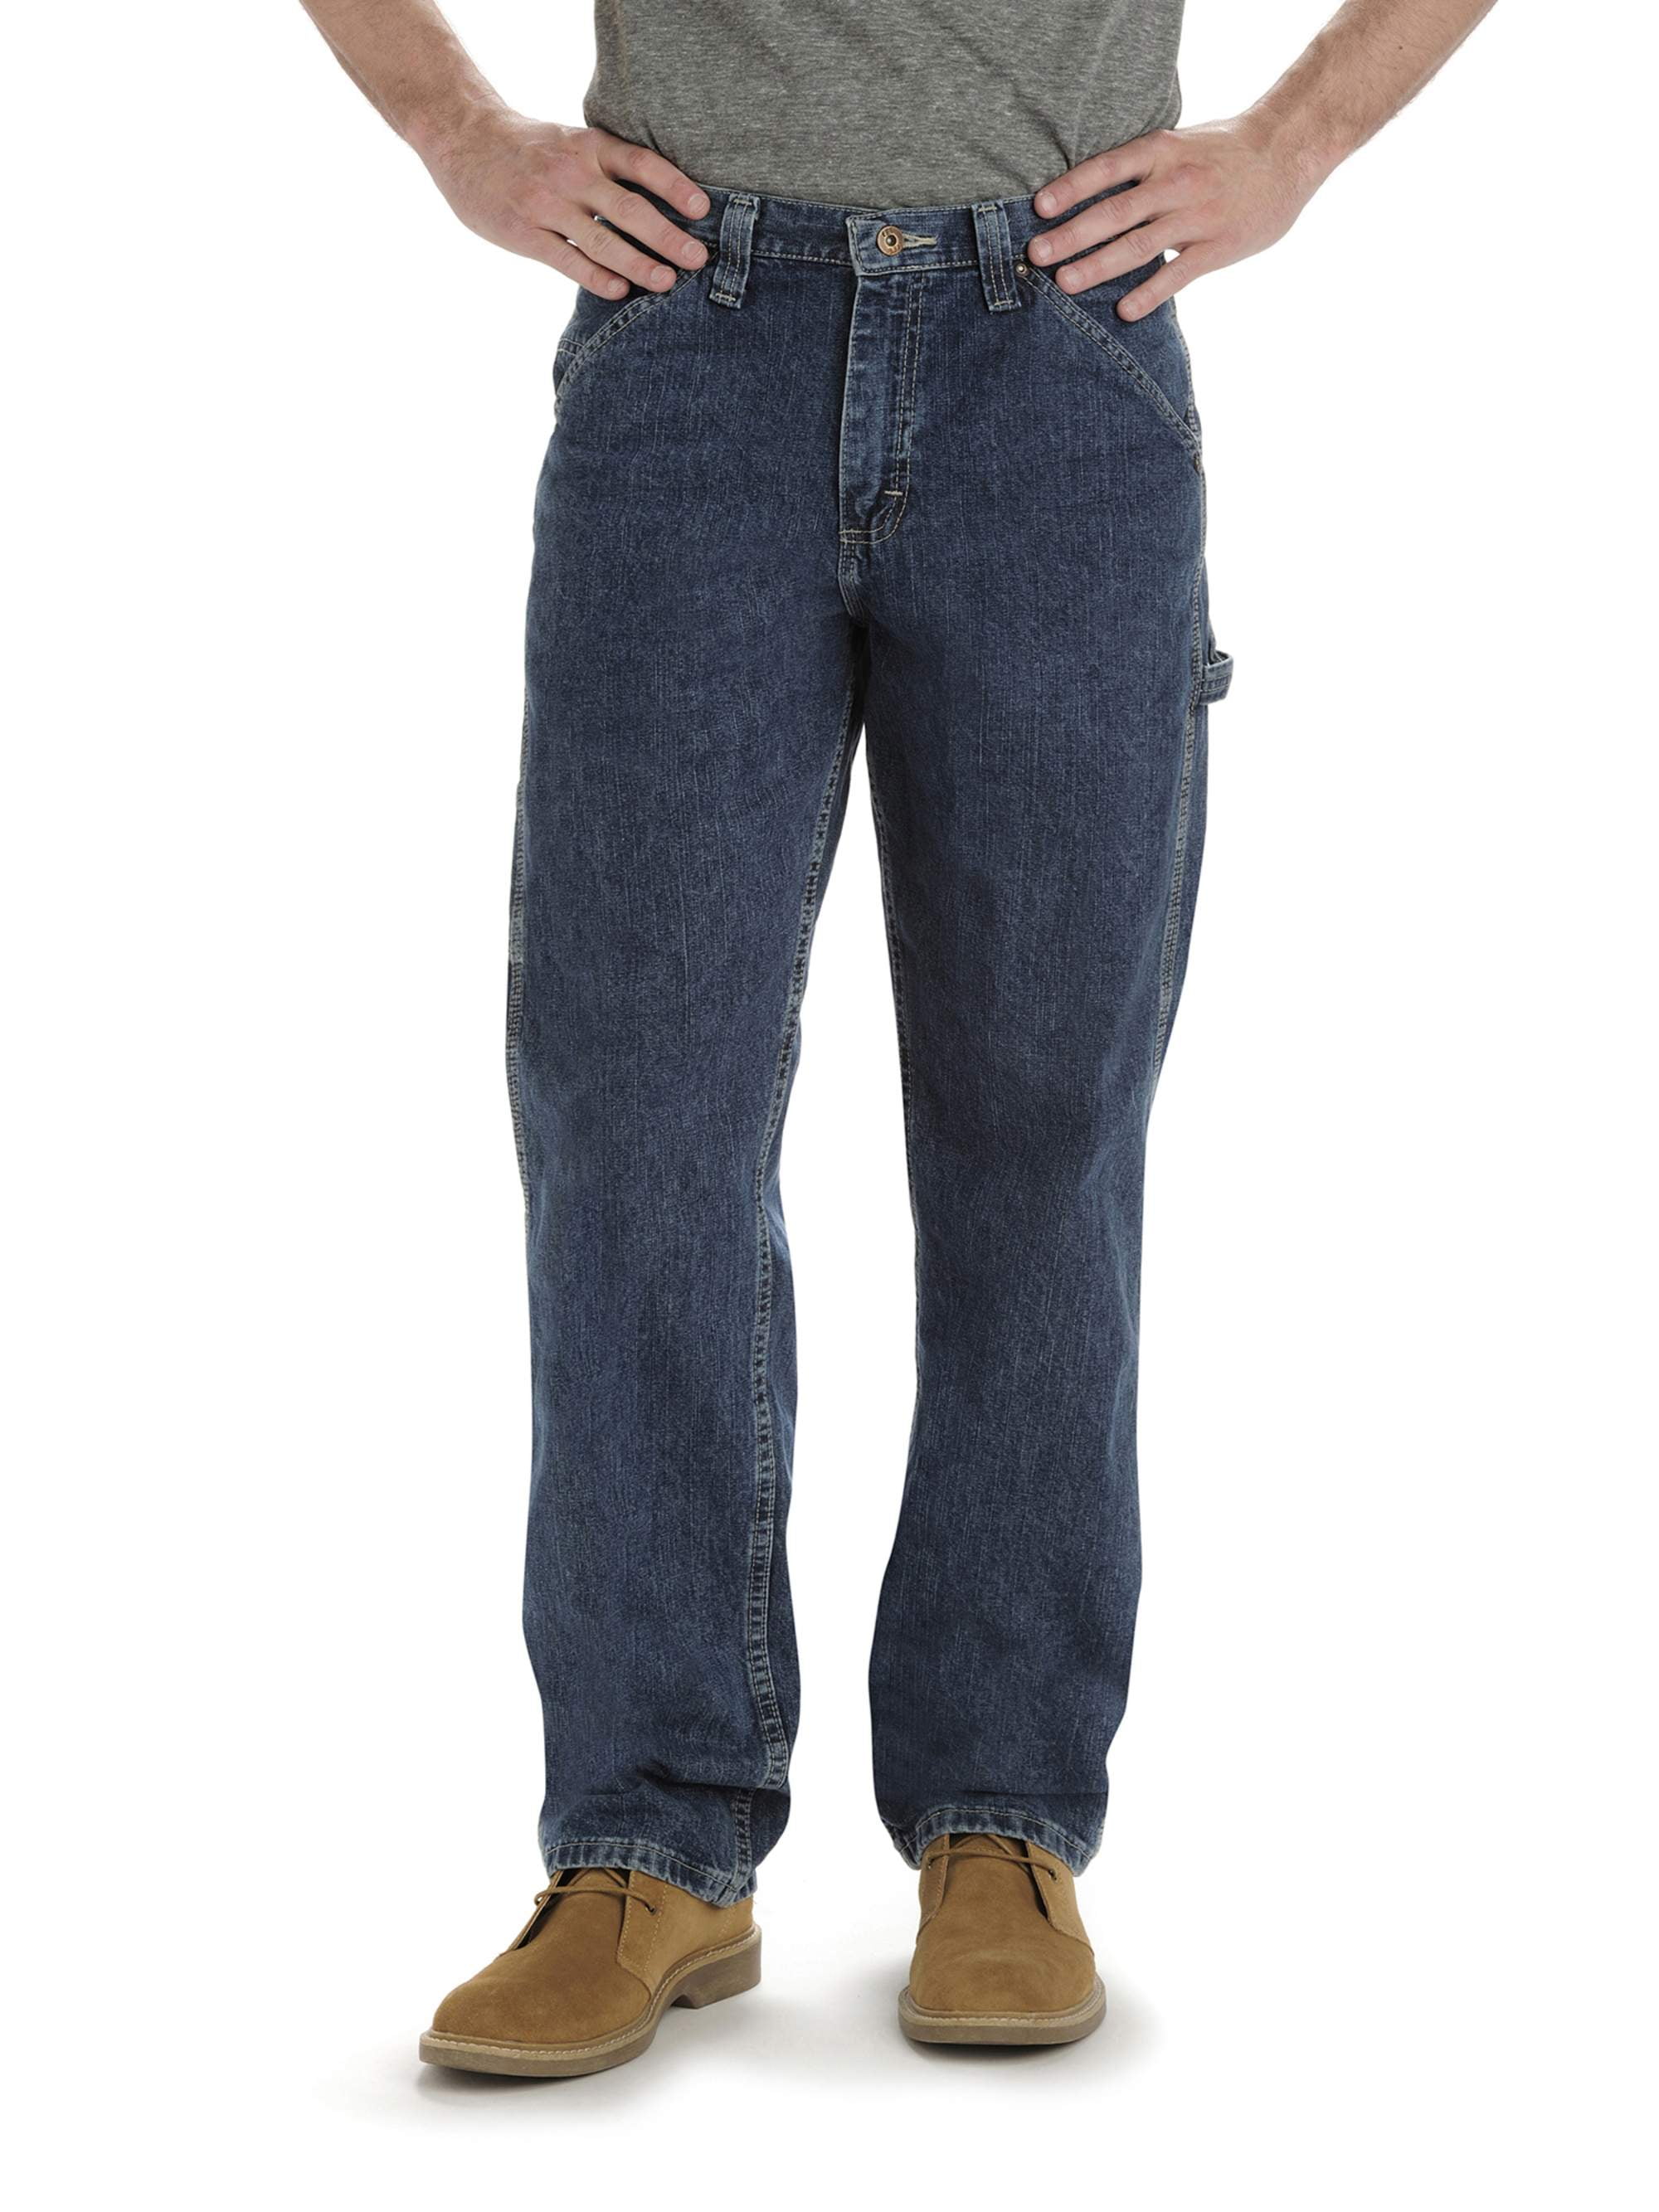 Lee - Lee Men's Big & Tall Comfort Fit Carpenter Jeans - Walmart.com ...